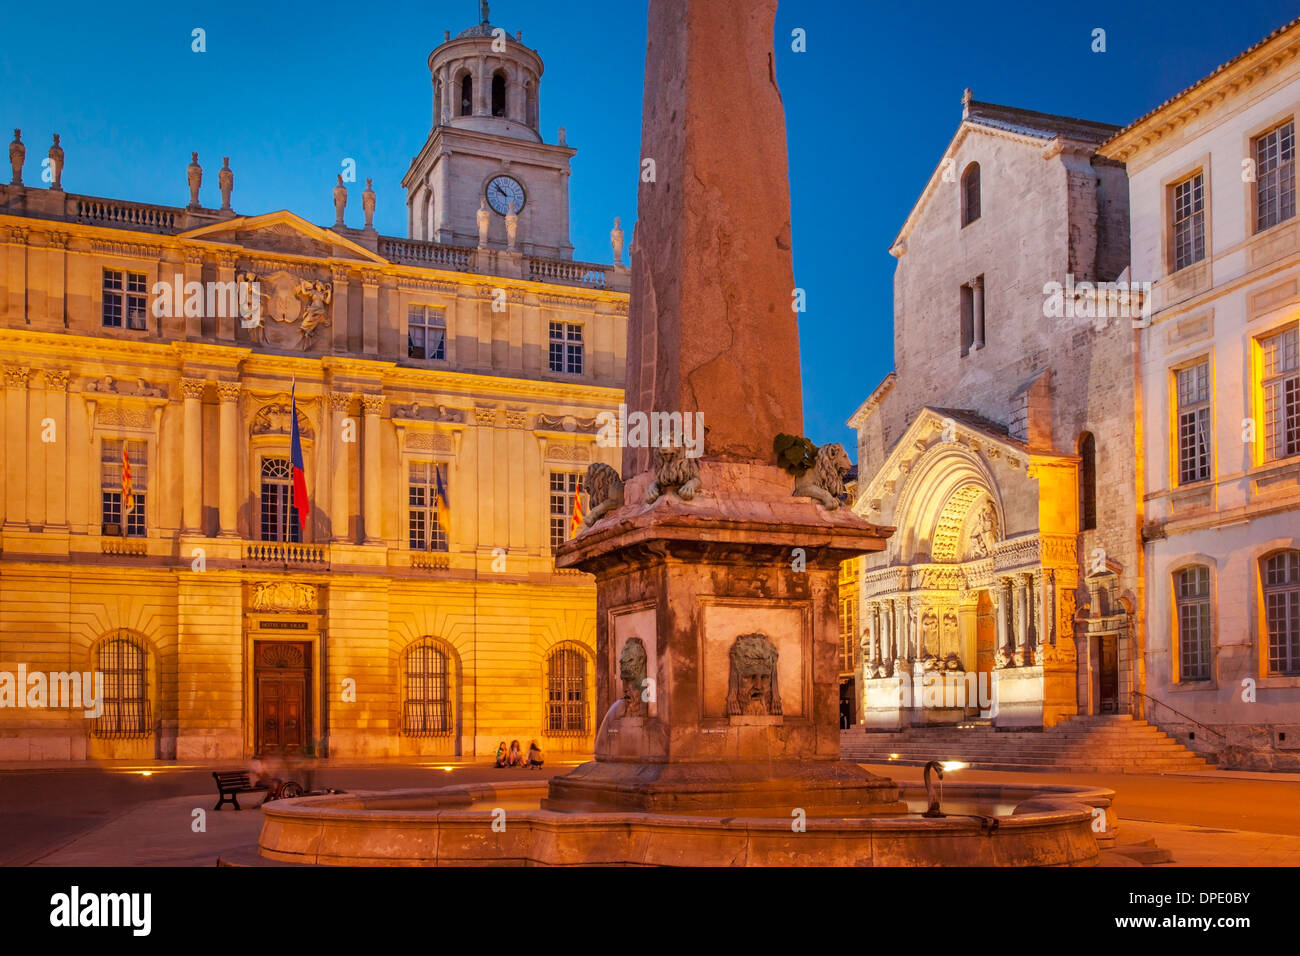 Denkmal-Obelisk, Eglise Saint-Trophime und Hôtel de Ville in Place De La Republique, Arles, Provence Frankreich Stockfoto